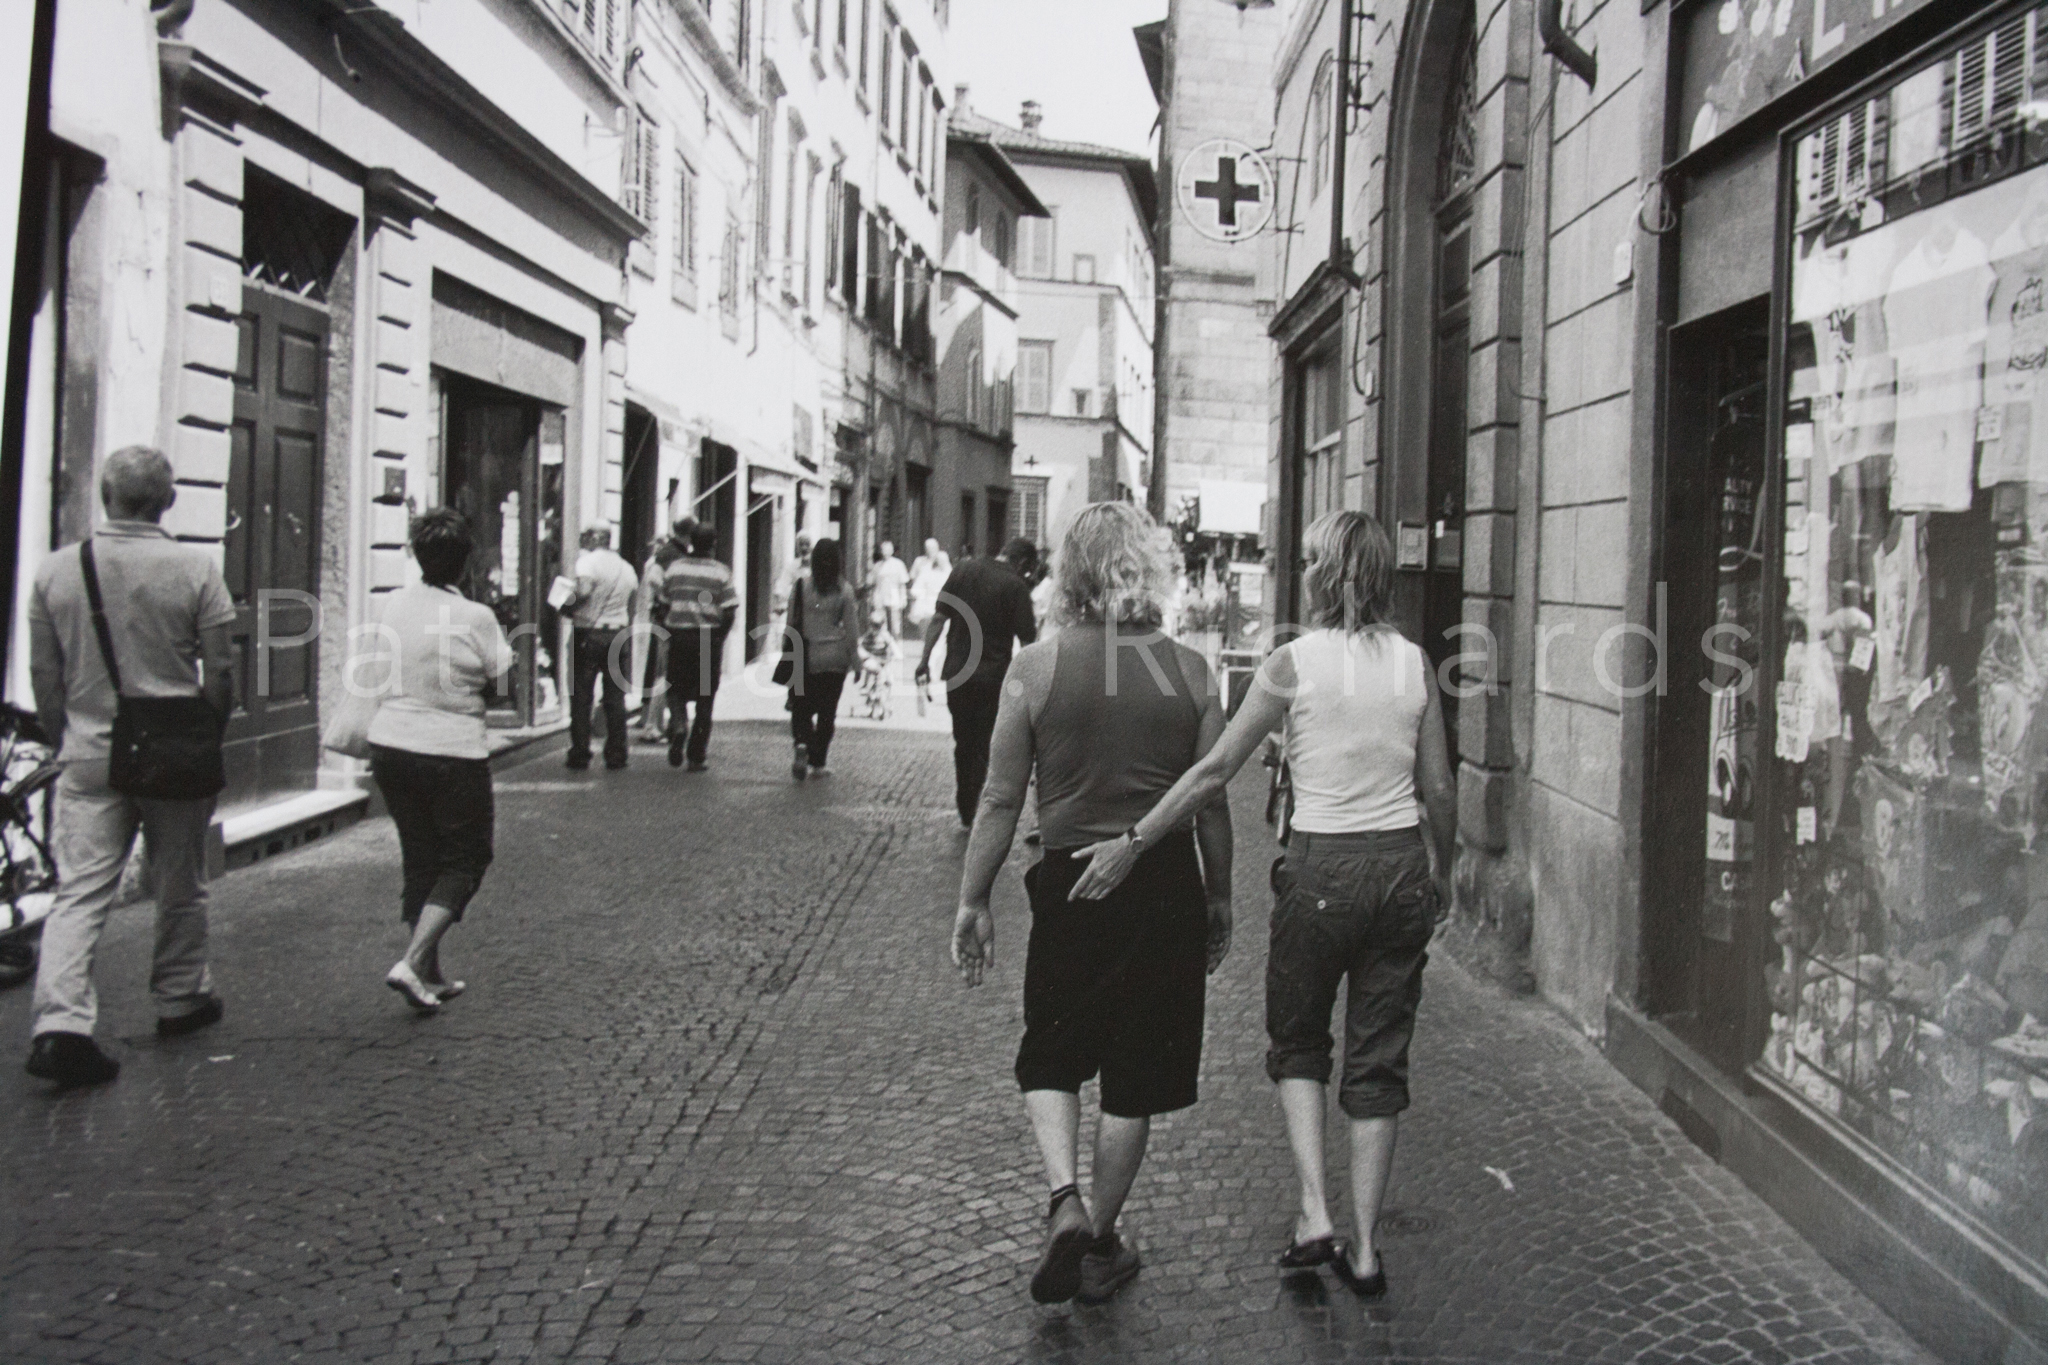 two women walking